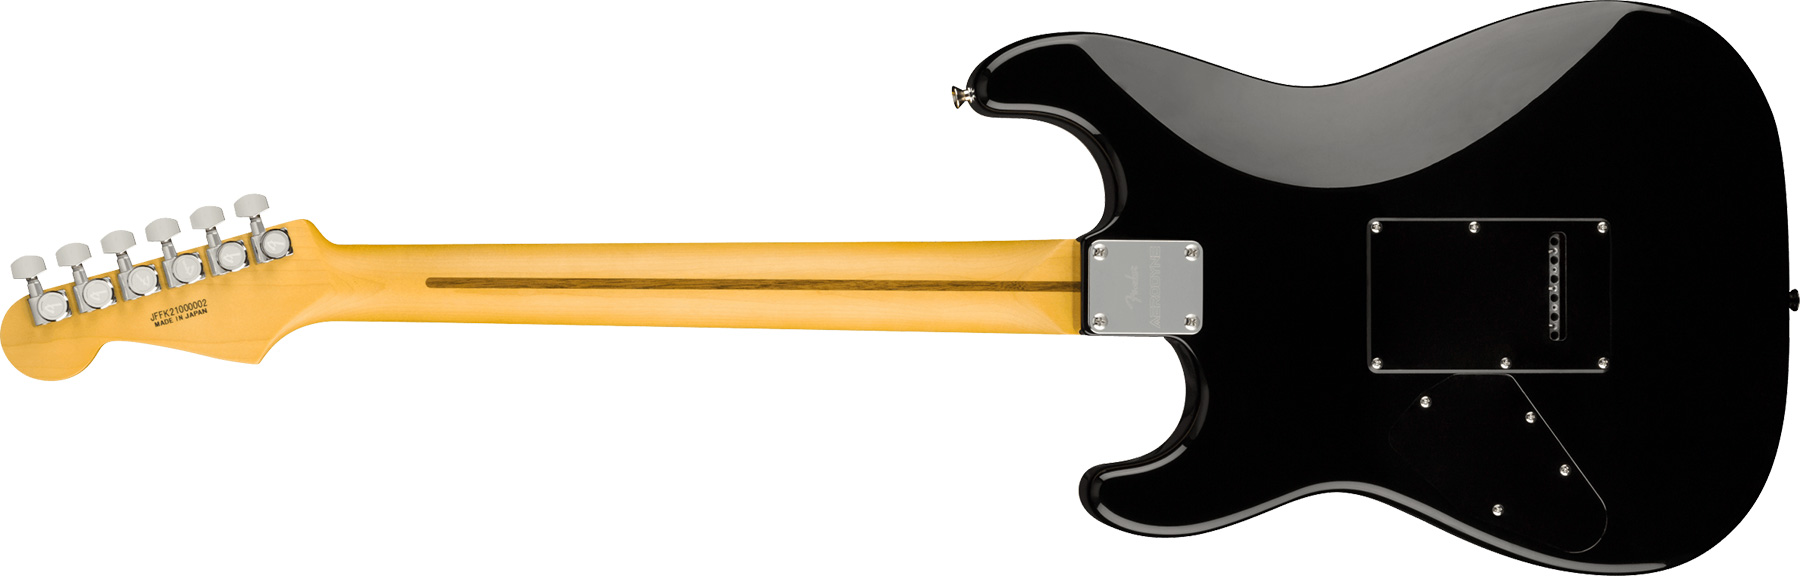 Fender Strat Aerodyne Special Jap Trem Hss Mn - Hot Rod Burst - Guitare Électrique Forme Str - Variation 1